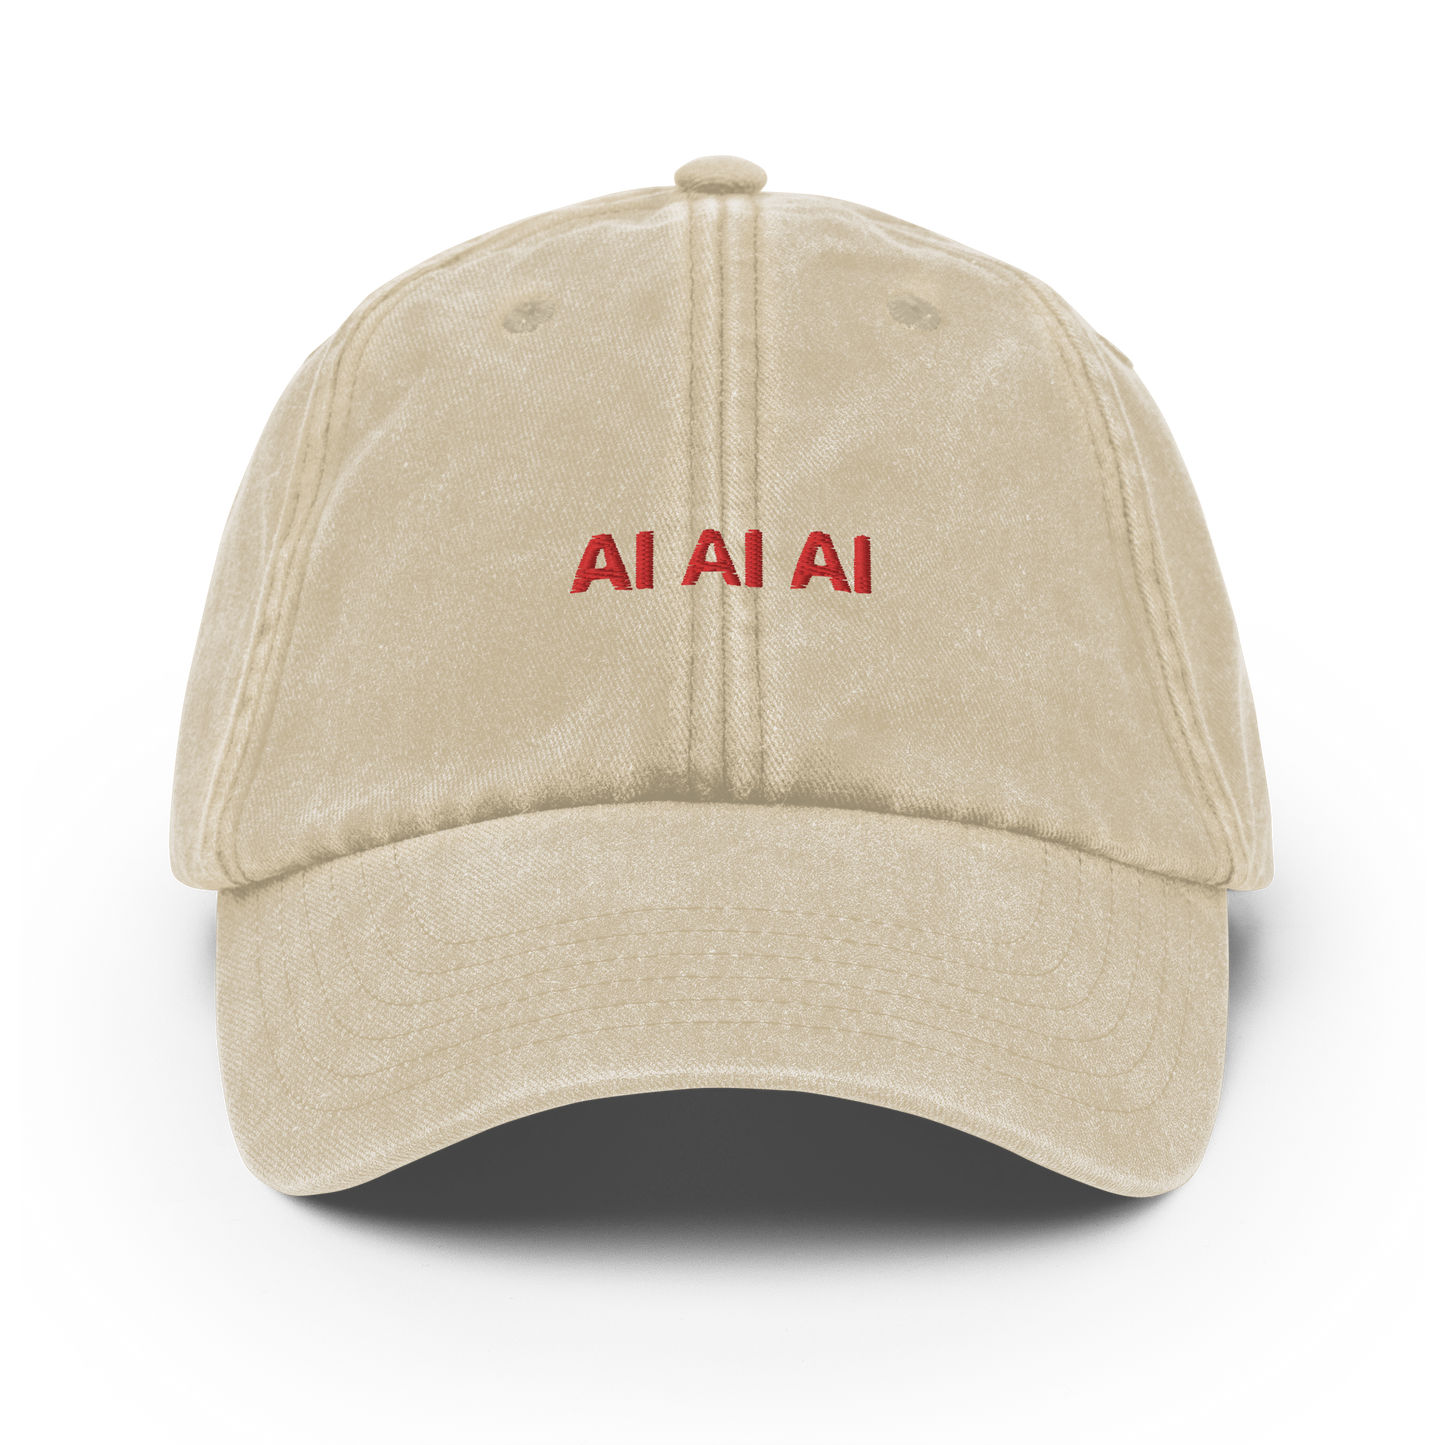 AI AI AI - Vintage Hat